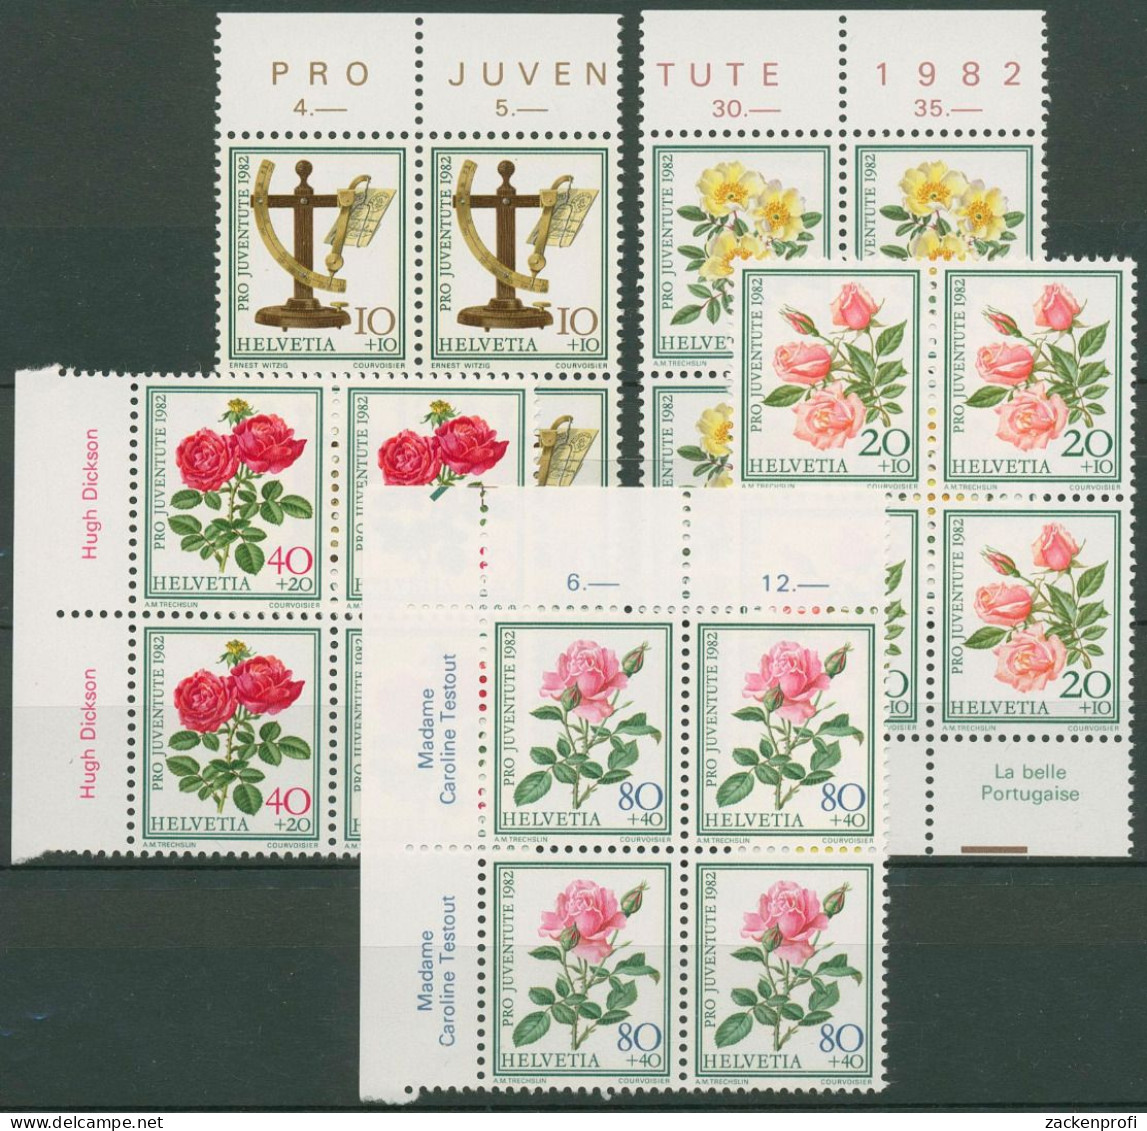 Schweiz 1982 Pro Juventute Pflanzen 1236/40 4er-Block Randbeschriftung Postfri. - Nuevos